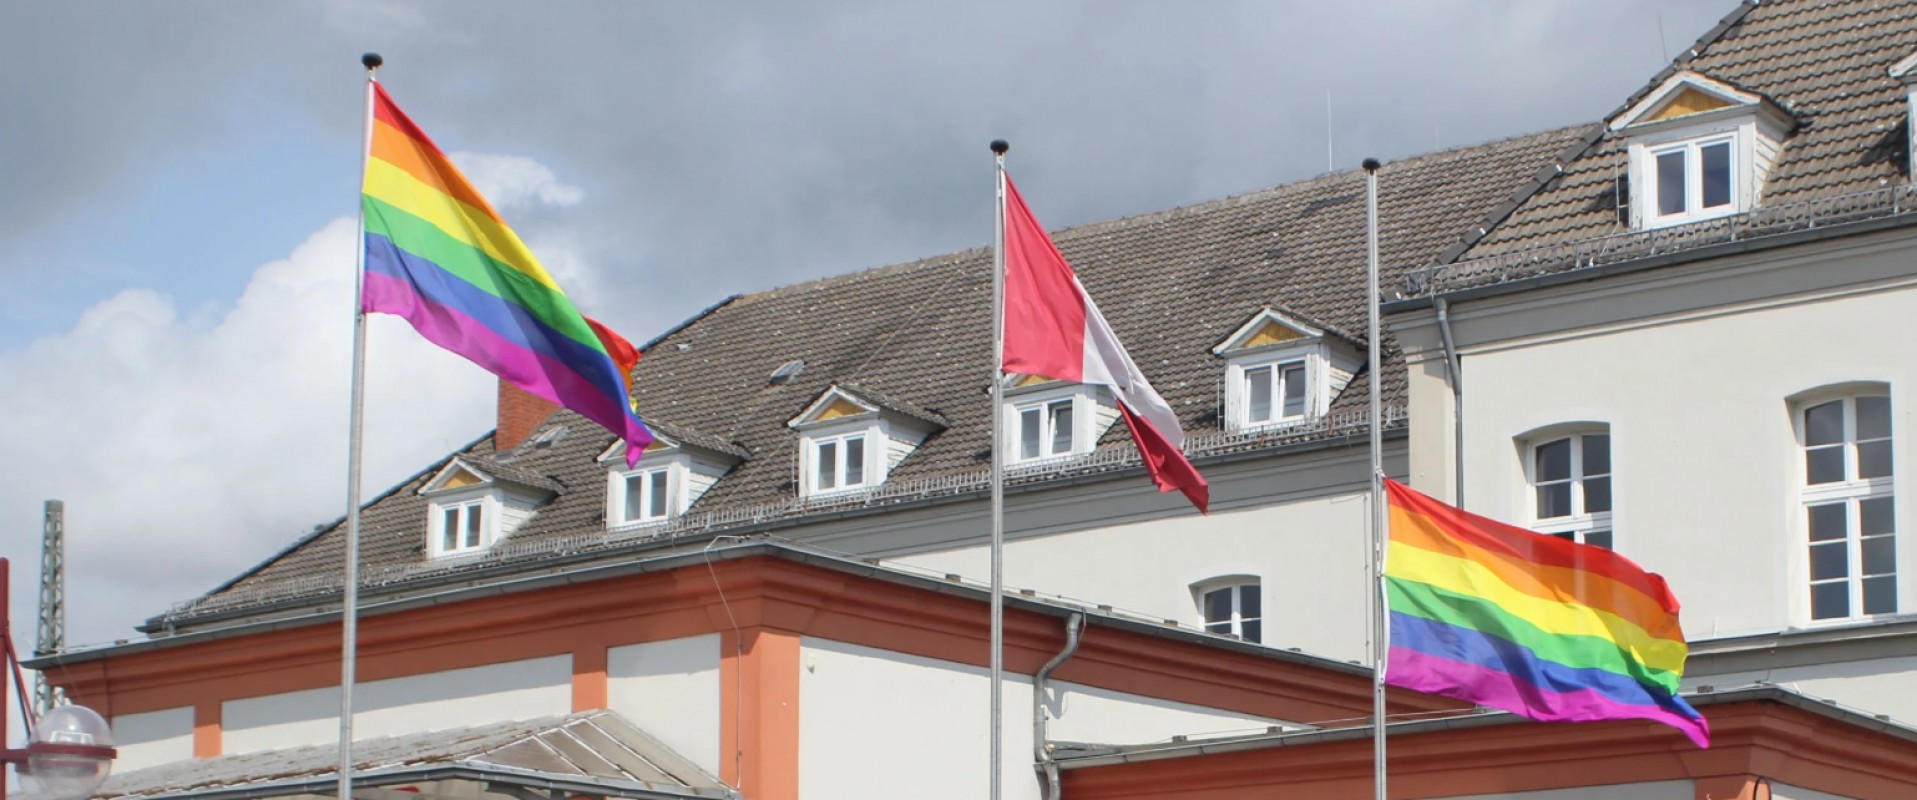 Allemagne : Le drapeau LGBT remplacé par une croix gammée dans une gare